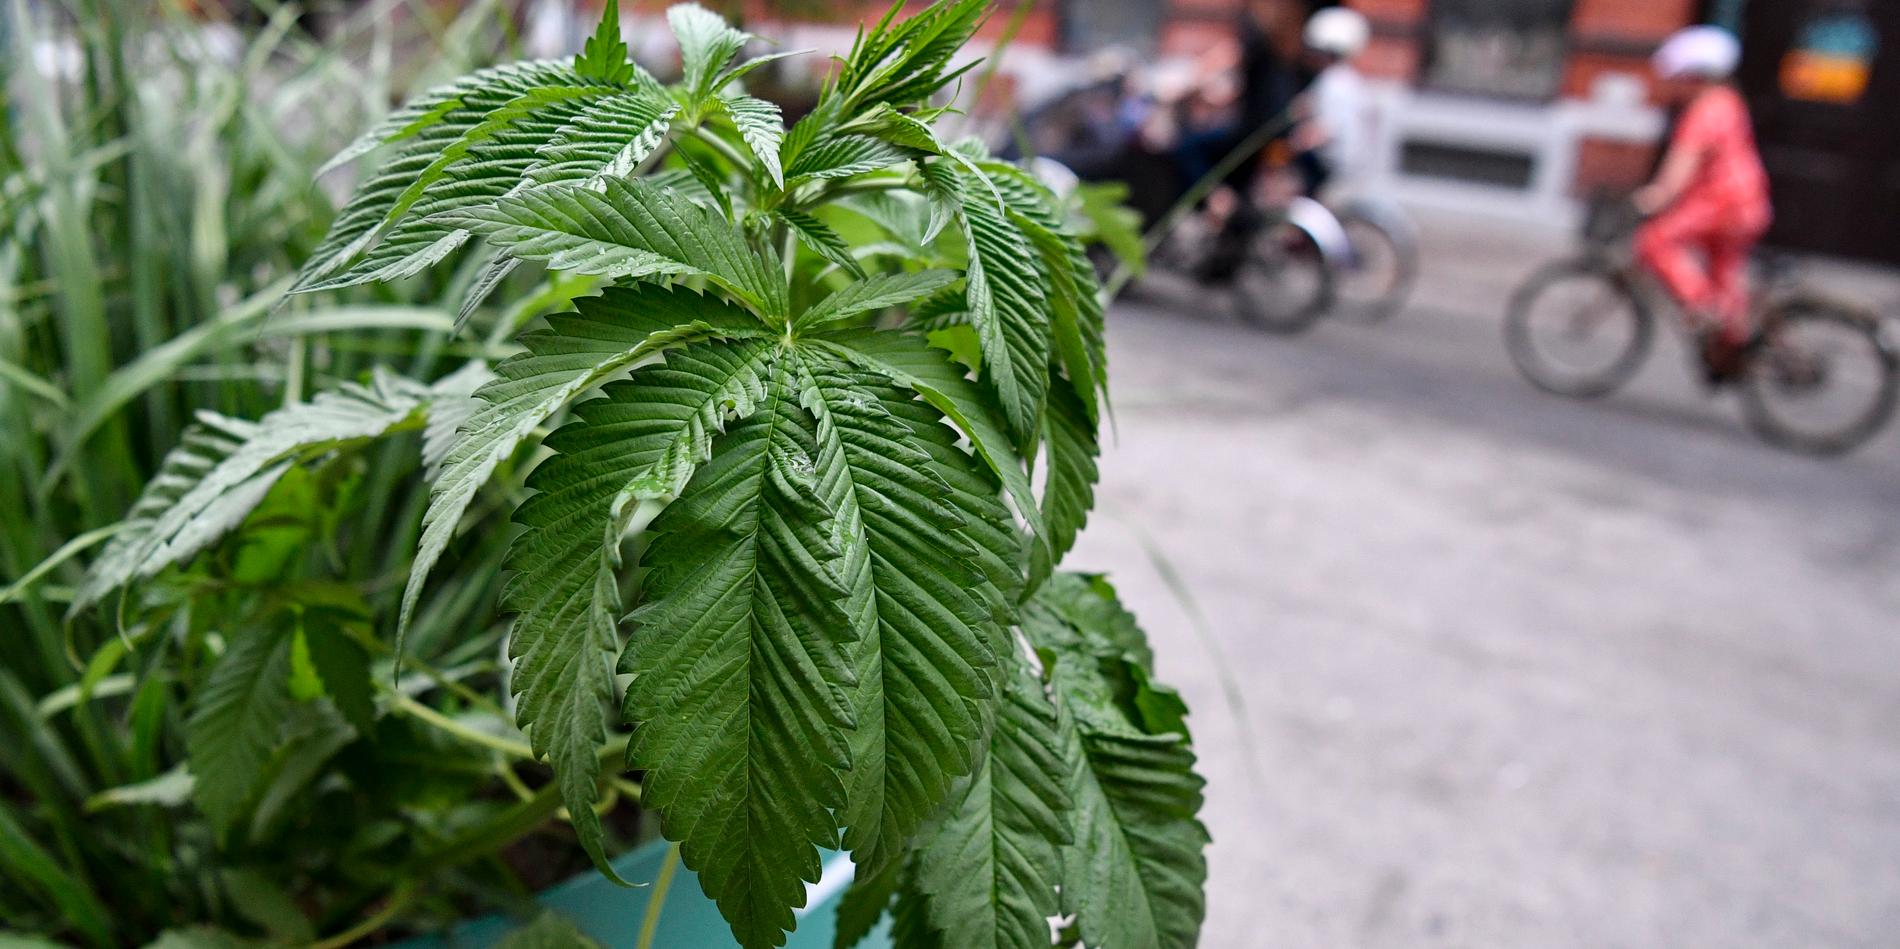 Friisgatan i juni förra året. En växtexpert vid SLU i Alnarp konstaterade att plantan i den kommunala krukan på sommargatan tveklöst var cannabis. Hur och när plantan hamnade där är fortfarande oklart.